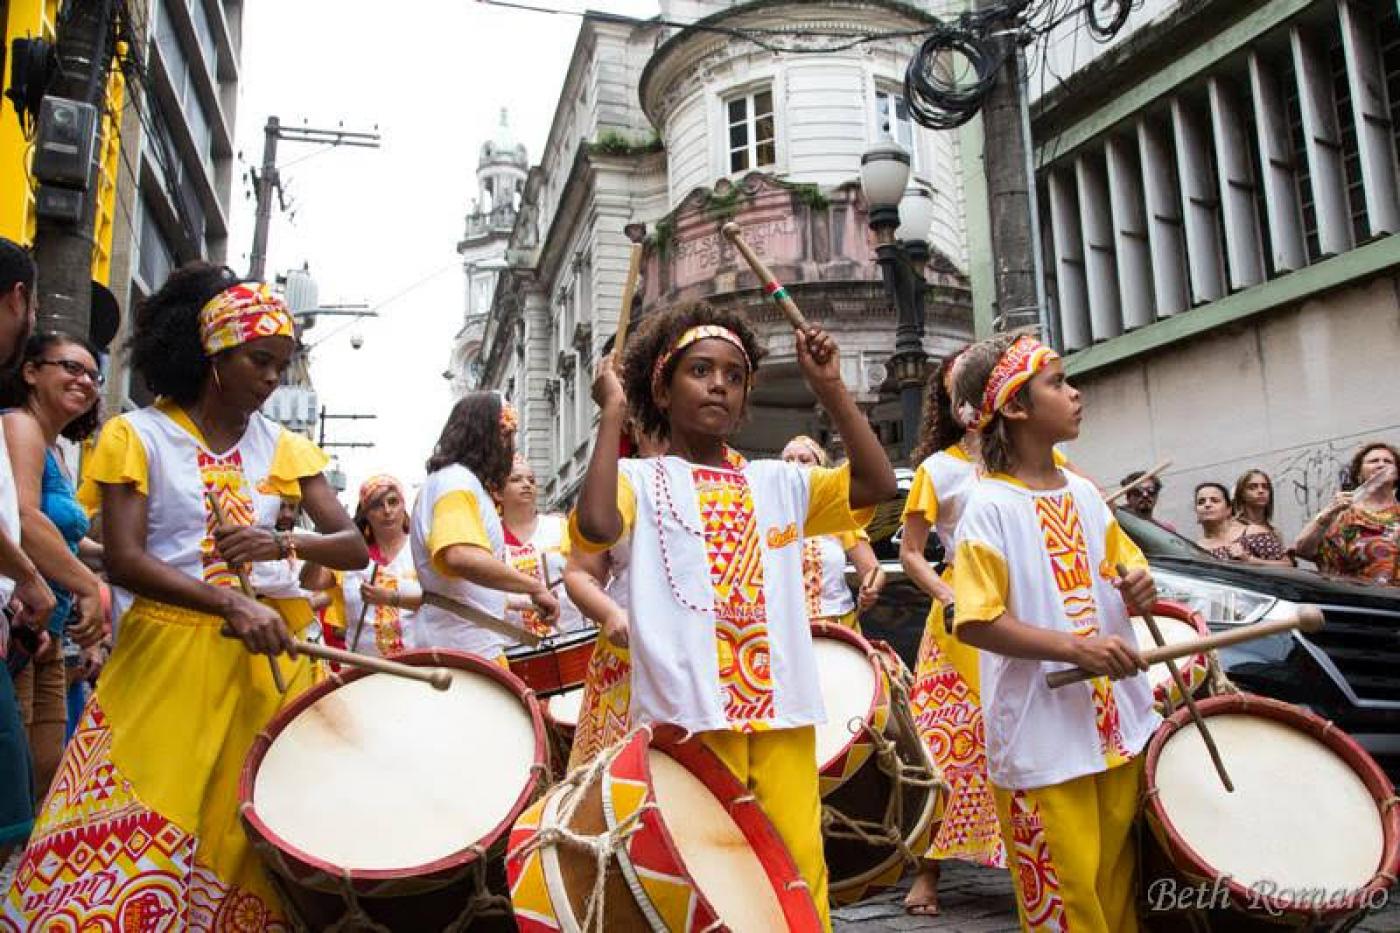 Grupo vestido com roupas do tipo afro e instrumentos de percussão desfila em rua. #Pracegover